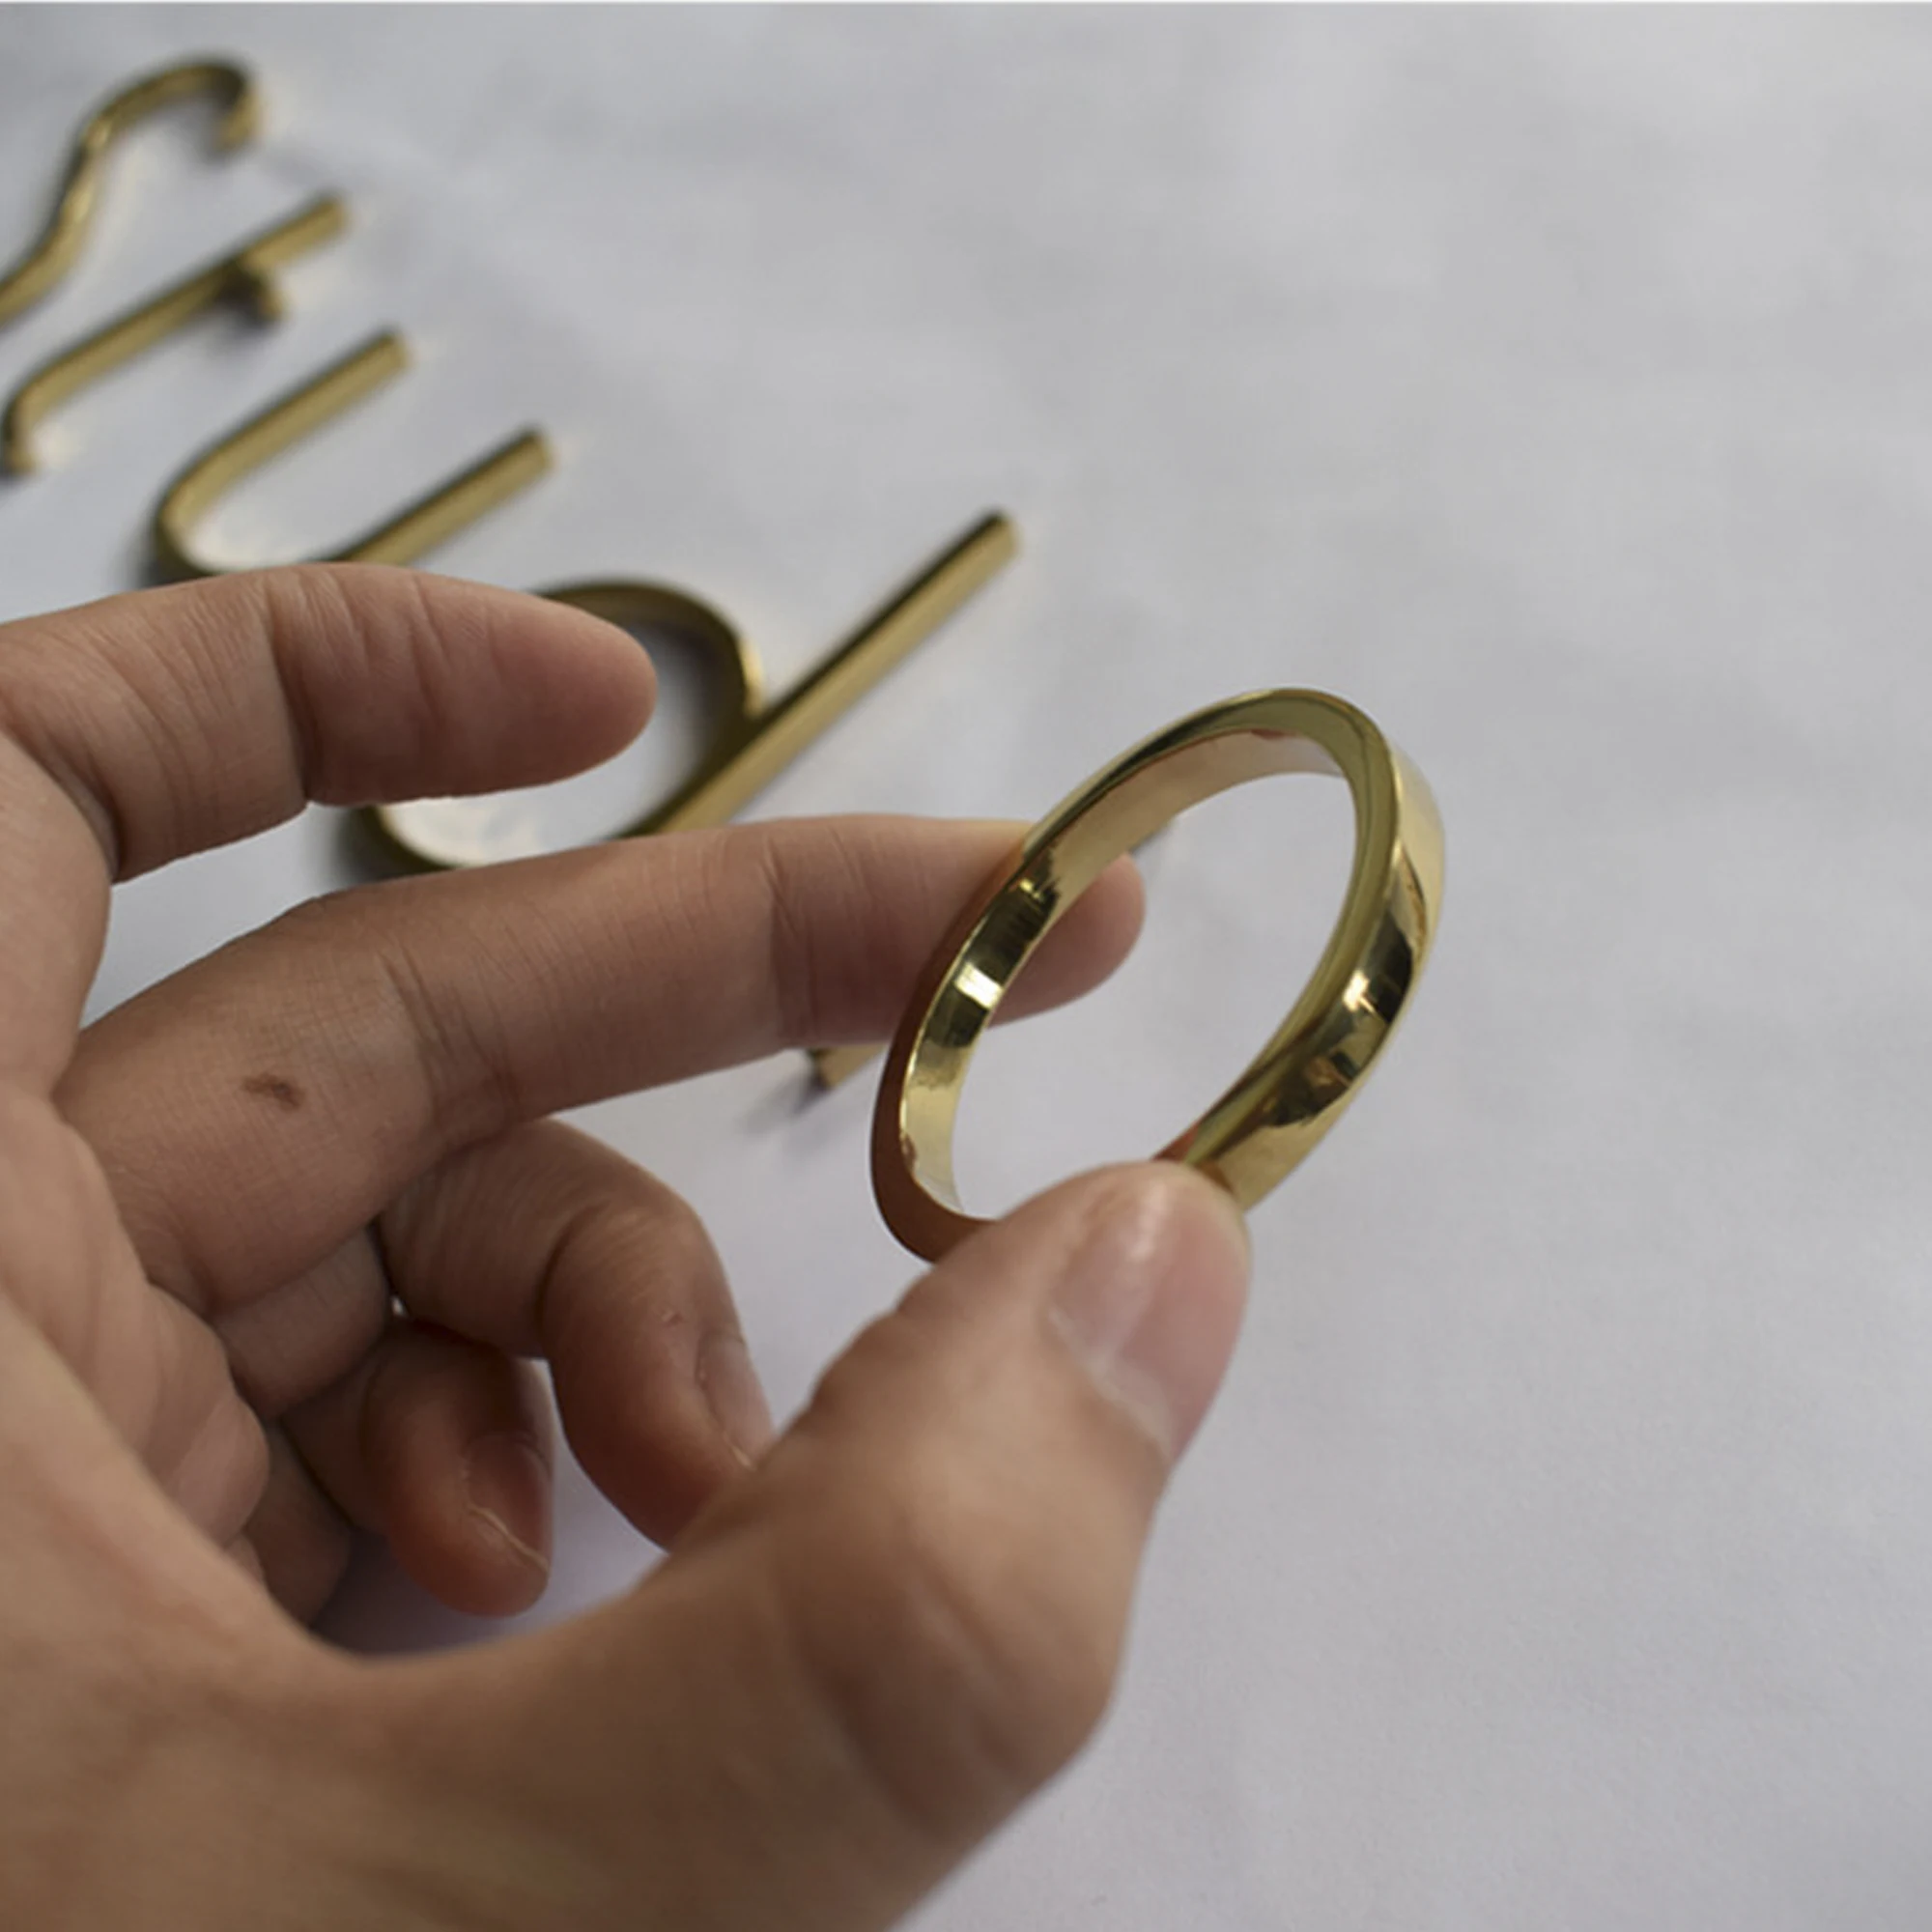 Özel ayna paslanmaz çelik 3D harfler tabela şirketi cilalı metal işareti iş dükkanı vitrin